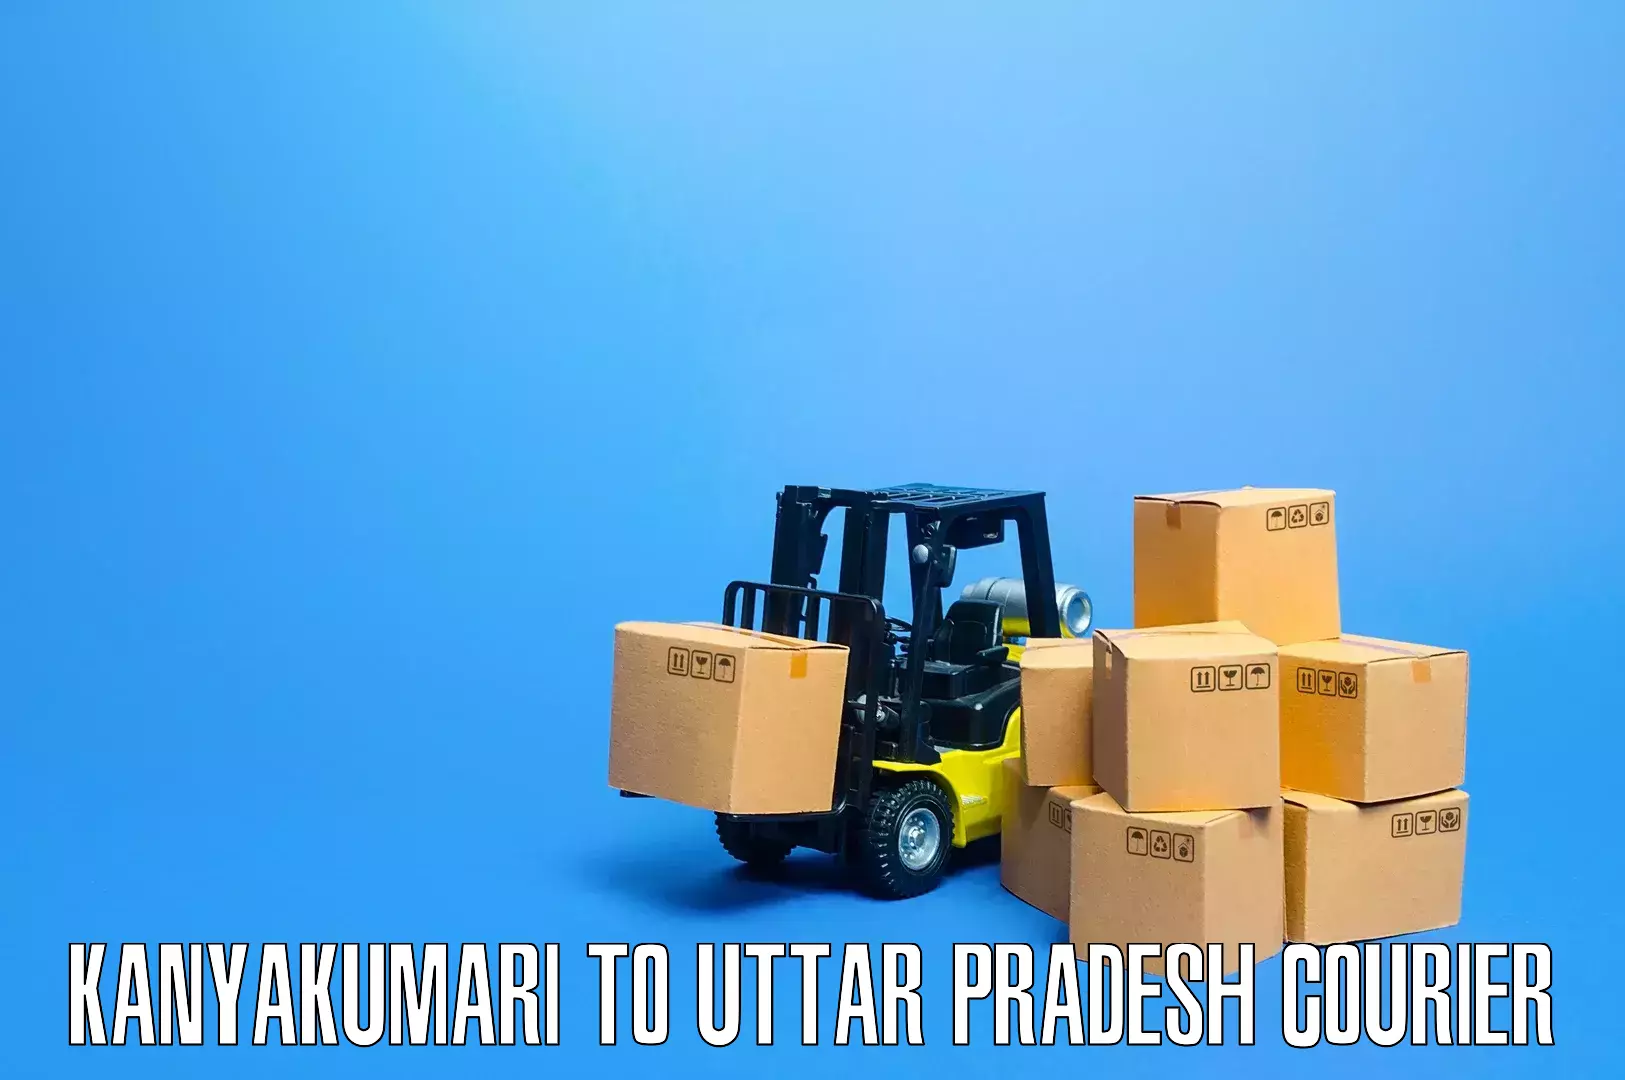 Professional home relocation in Kanyakumari to Uttar Pradesh